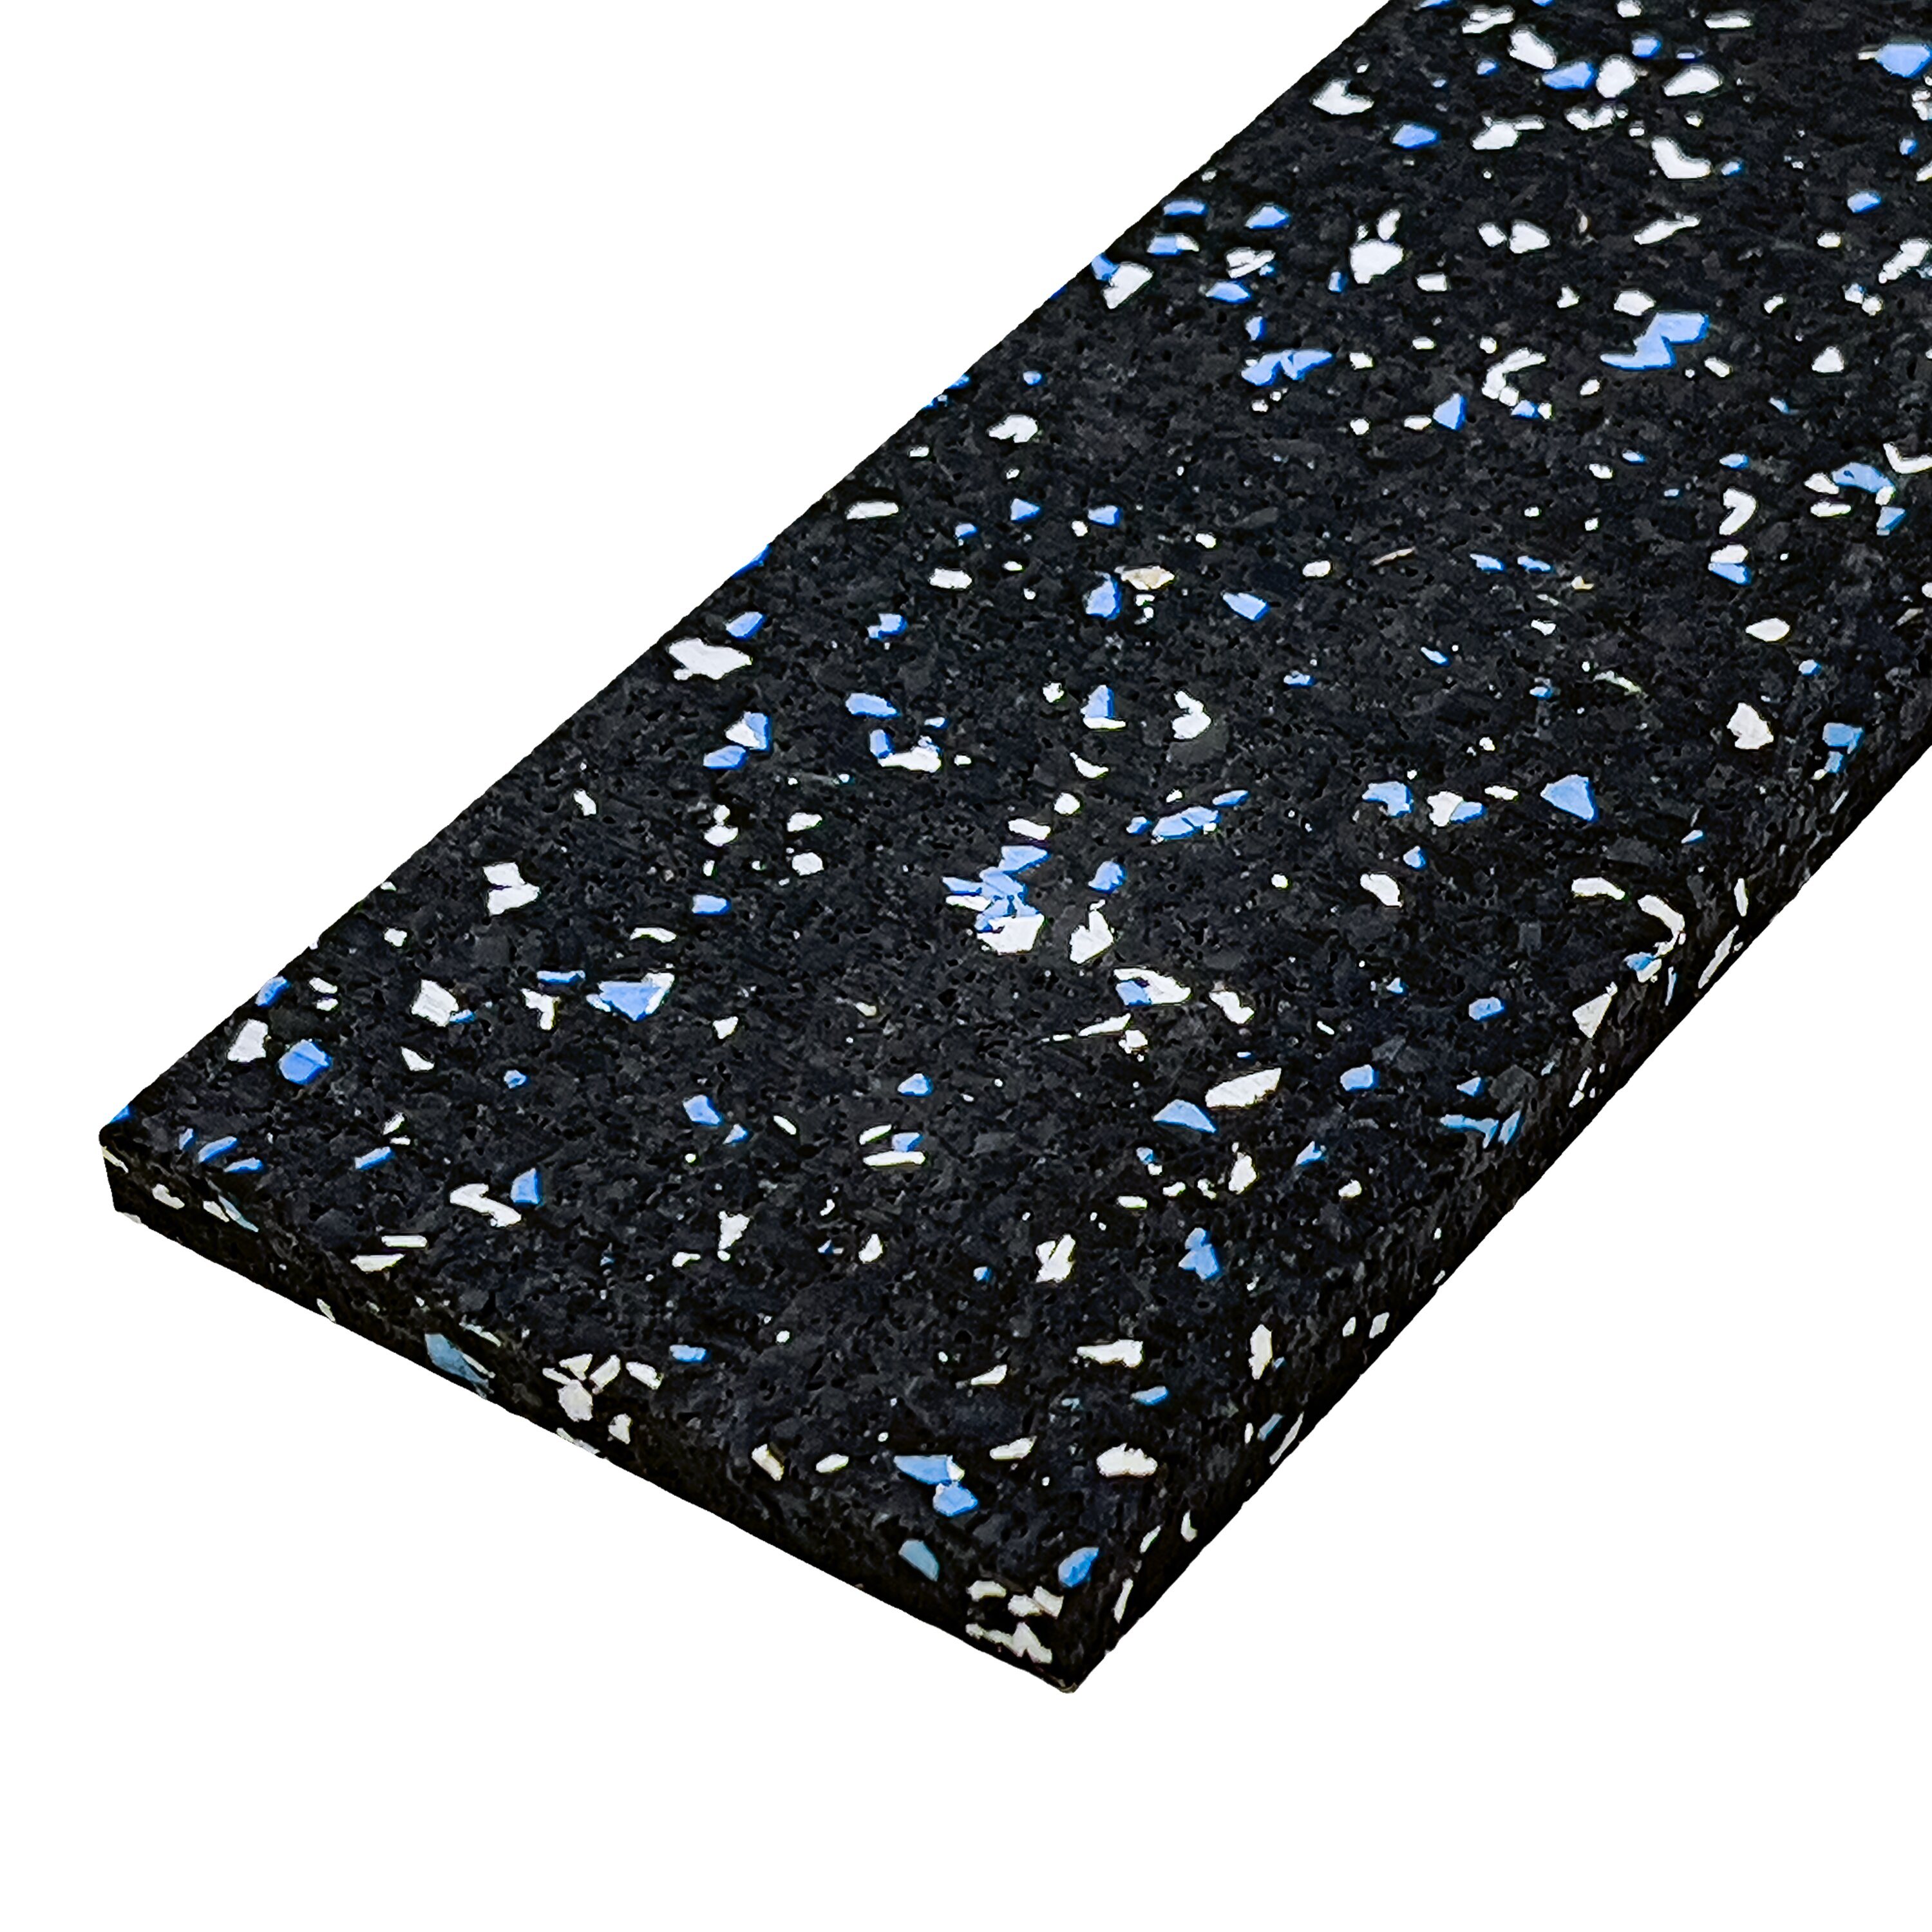 Čierno-bielo-modrá gumová soklová podlahová lišta FLOMA FitFlo IceFlo - dĺžka 200 cm, šírka 7 cm, hrúbka 0,8 cm